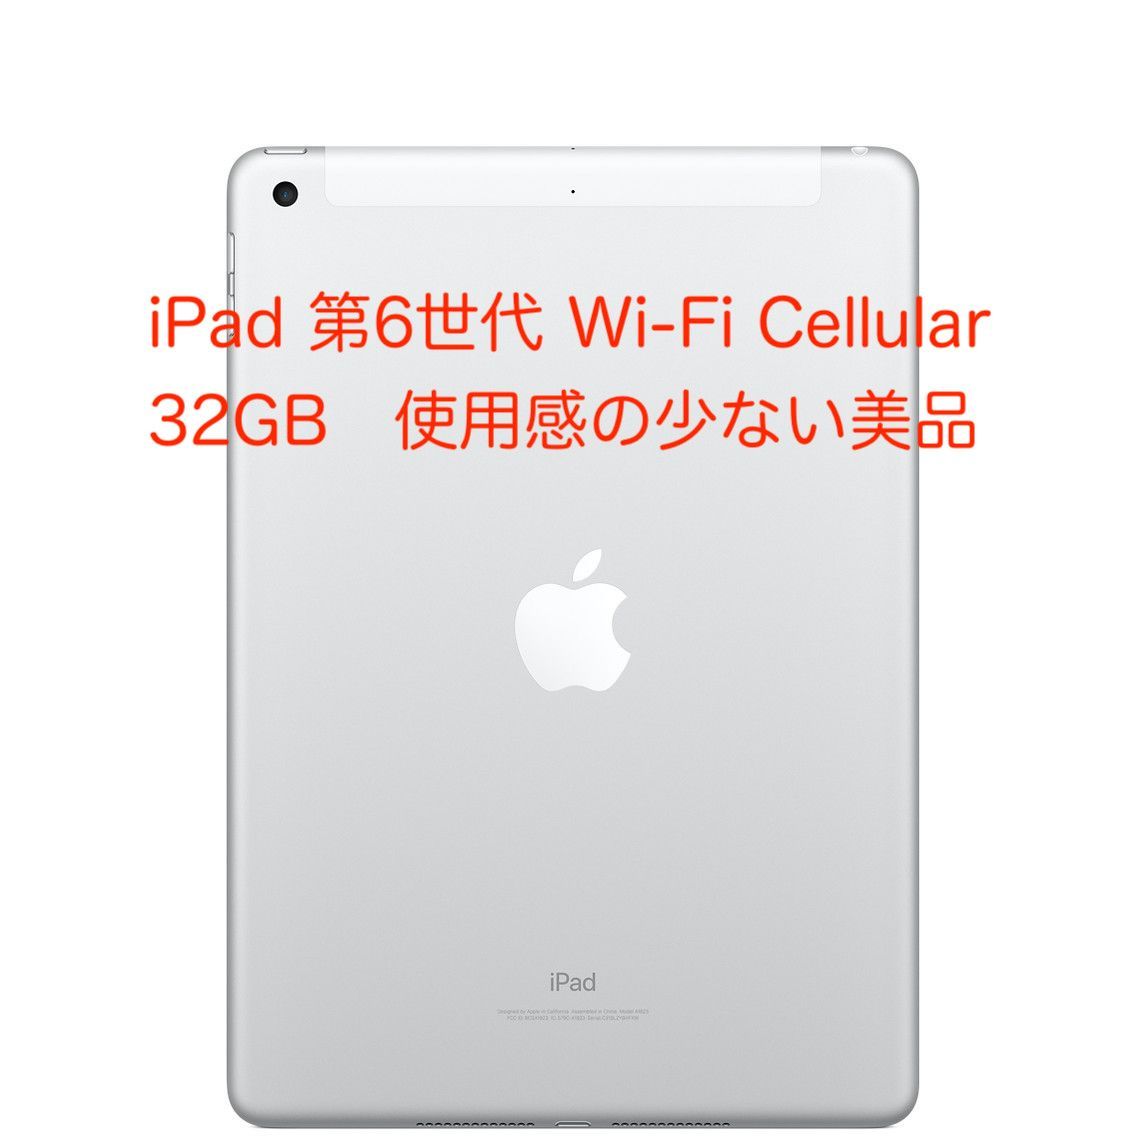 日本正規代理店品 iPad第6世代 Wi-Fi + Cellularモデル スペースグレー